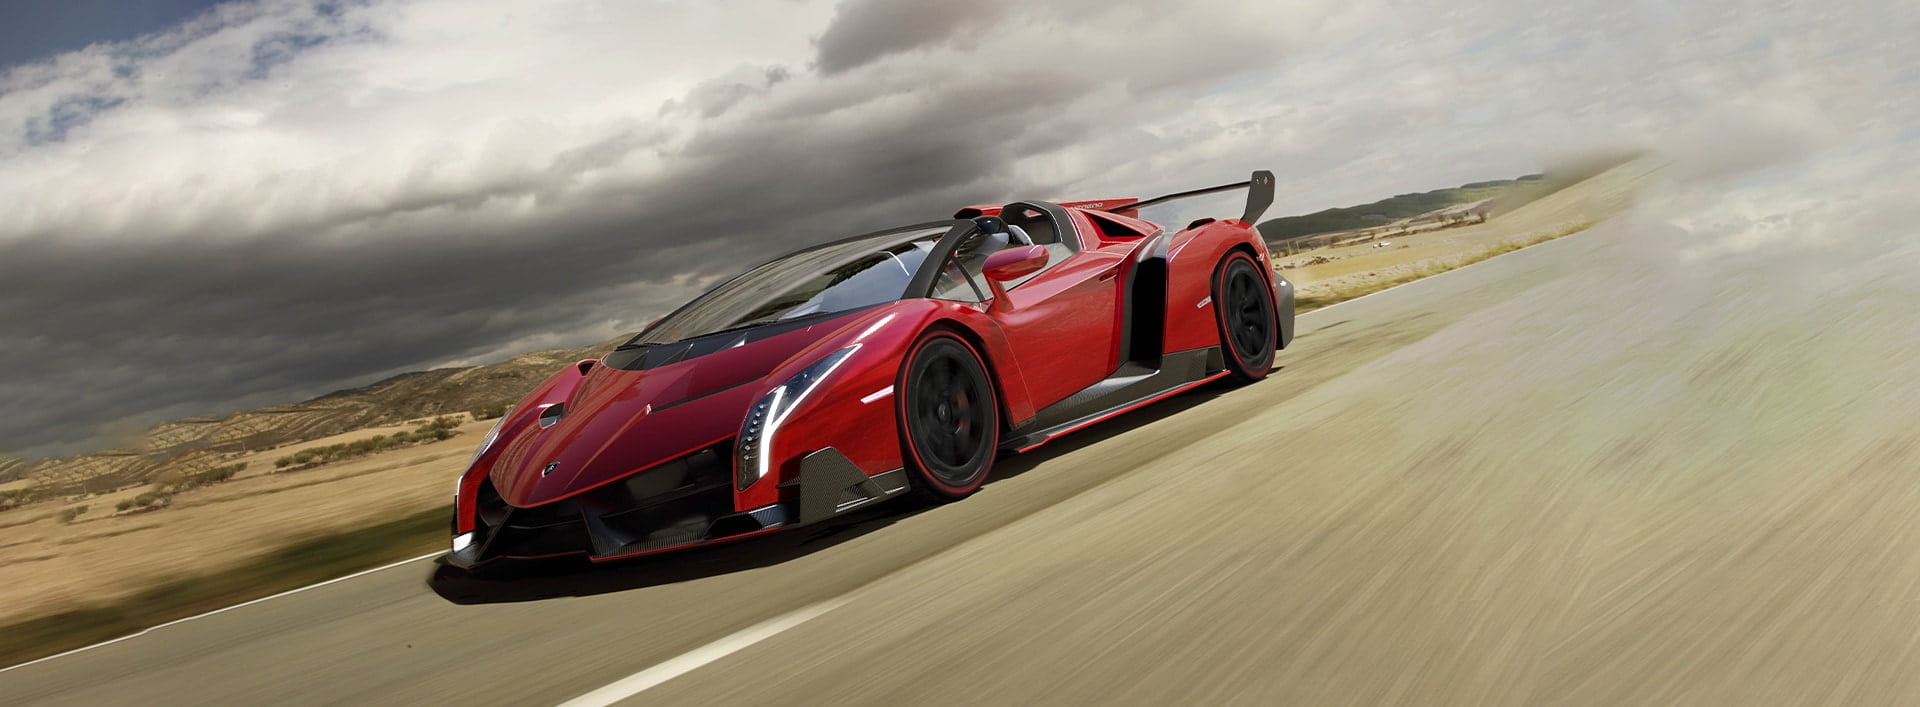 Lamborghini Veneno red new fastest car in the world